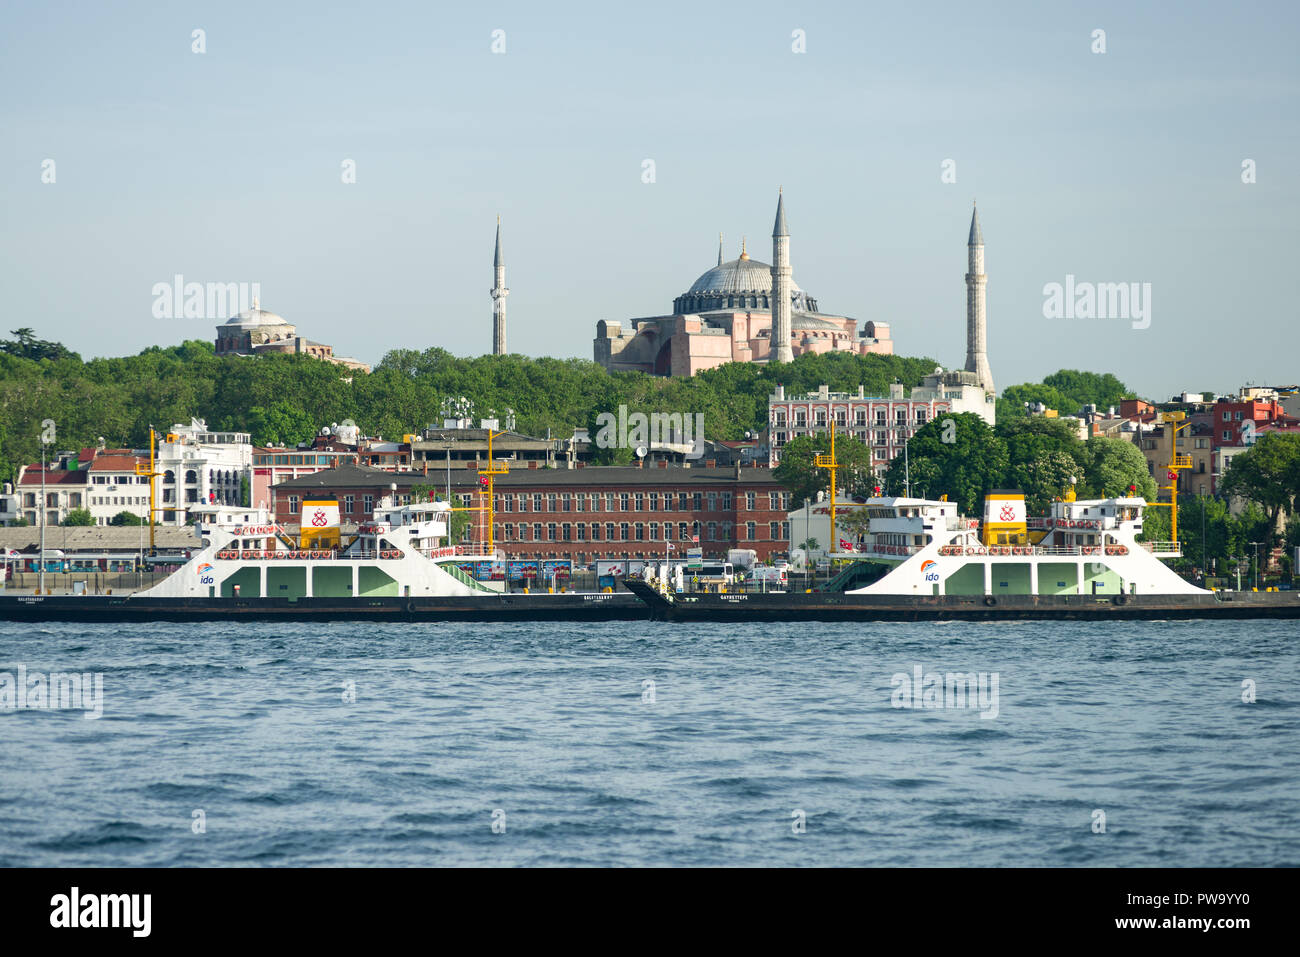 Veicolo ferries ormeggiata al porto di Eminonu con il Museo Hagia Sophia in background, Istanbul, Turchia Foto Stock